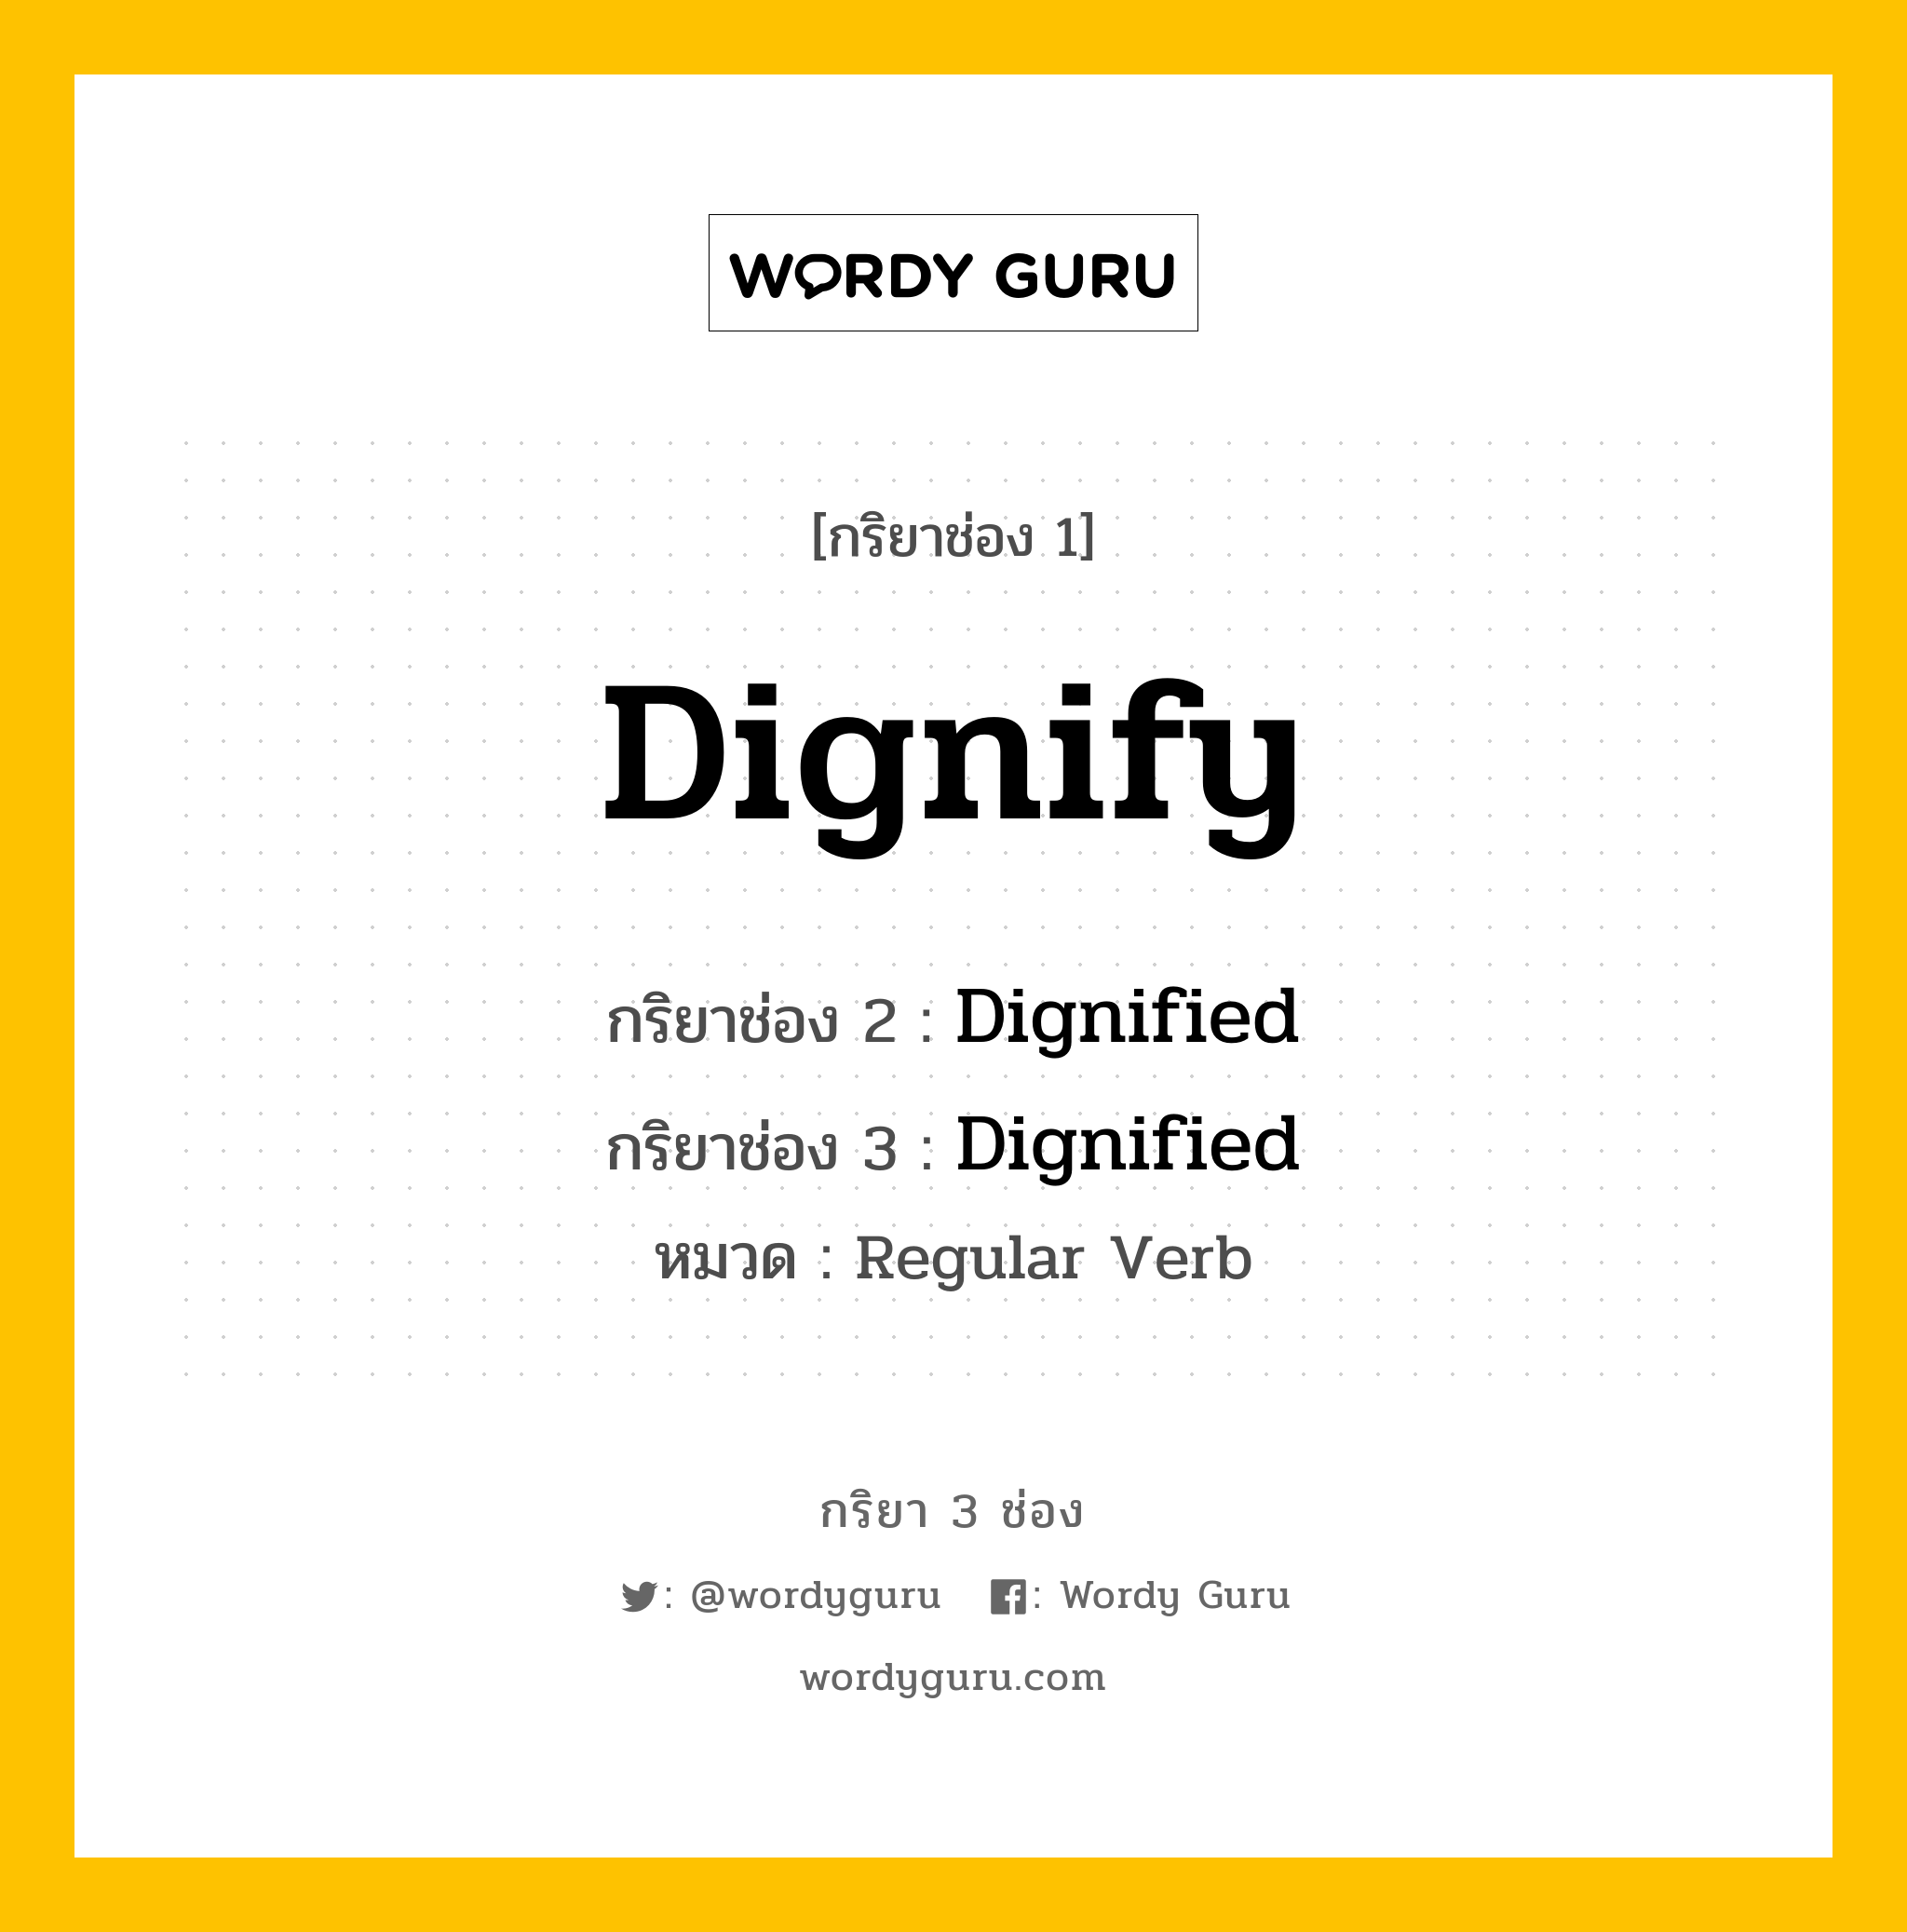 กริยา 3 ช่อง: Dignify ช่อง 2 Dignify ช่อง 3 คืออะไร, กริยาช่อง 1 Dignify กริยาช่อง 2 Dignified กริยาช่อง 3 Dignified หมวด Regular Verb หมวด Regular Verb